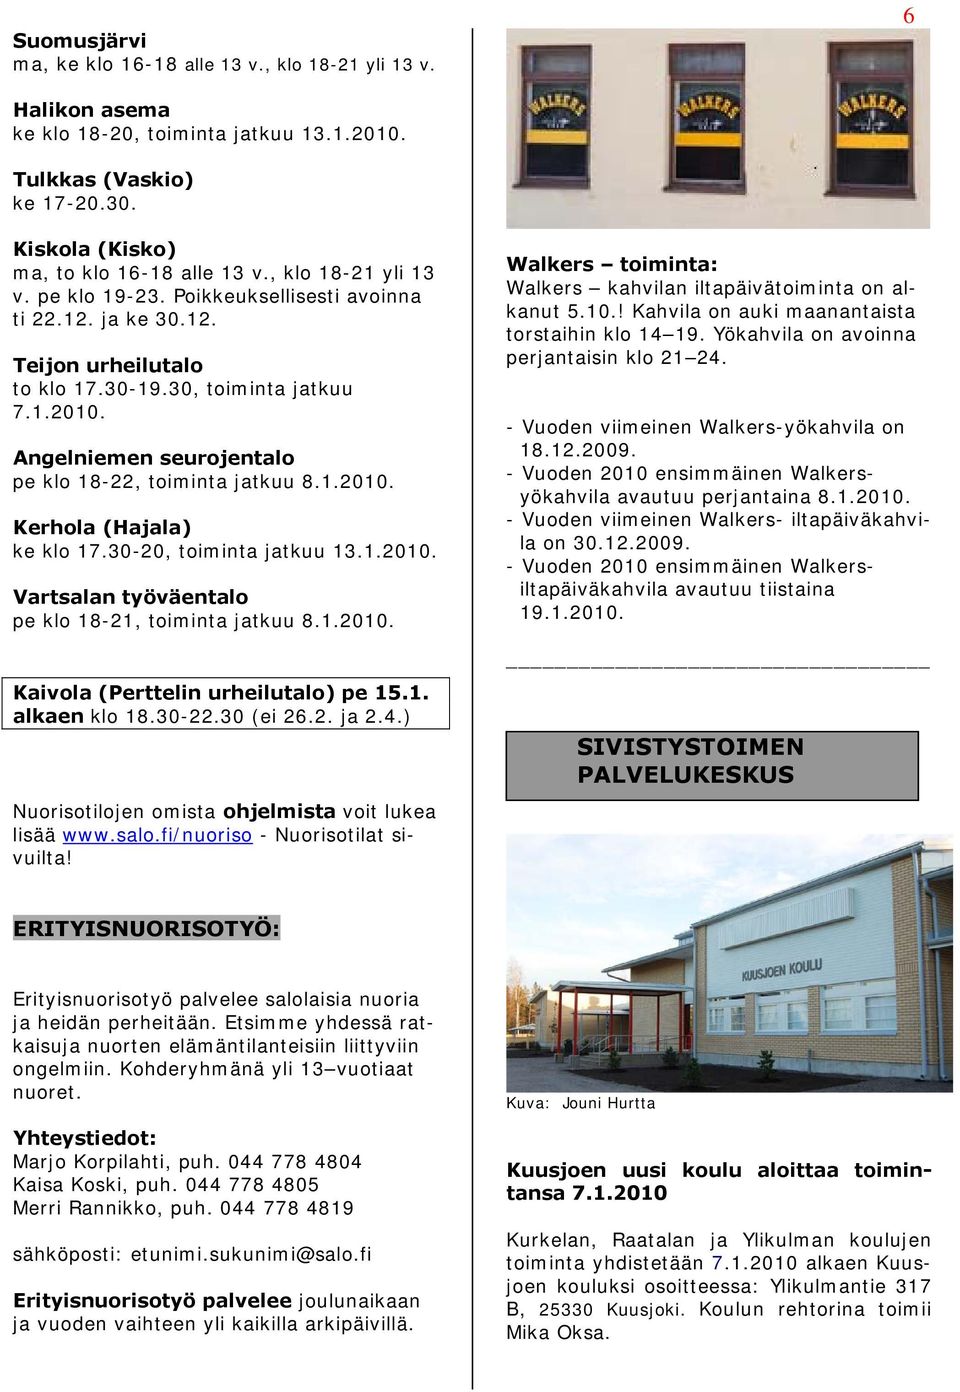 Angelniemen seurojentalo pe klo 18-22, toiminta jatkuu 8.1.2010. Kerhola (Hajala) ke klo 17.30-20, toiminta jatkuu 13.1.2010. Vartsalan työväentalo pe klo 18-21, toiminta jatkuu 8.1.2010. Kaivola (Perttelin urheilutalo) pe 15.